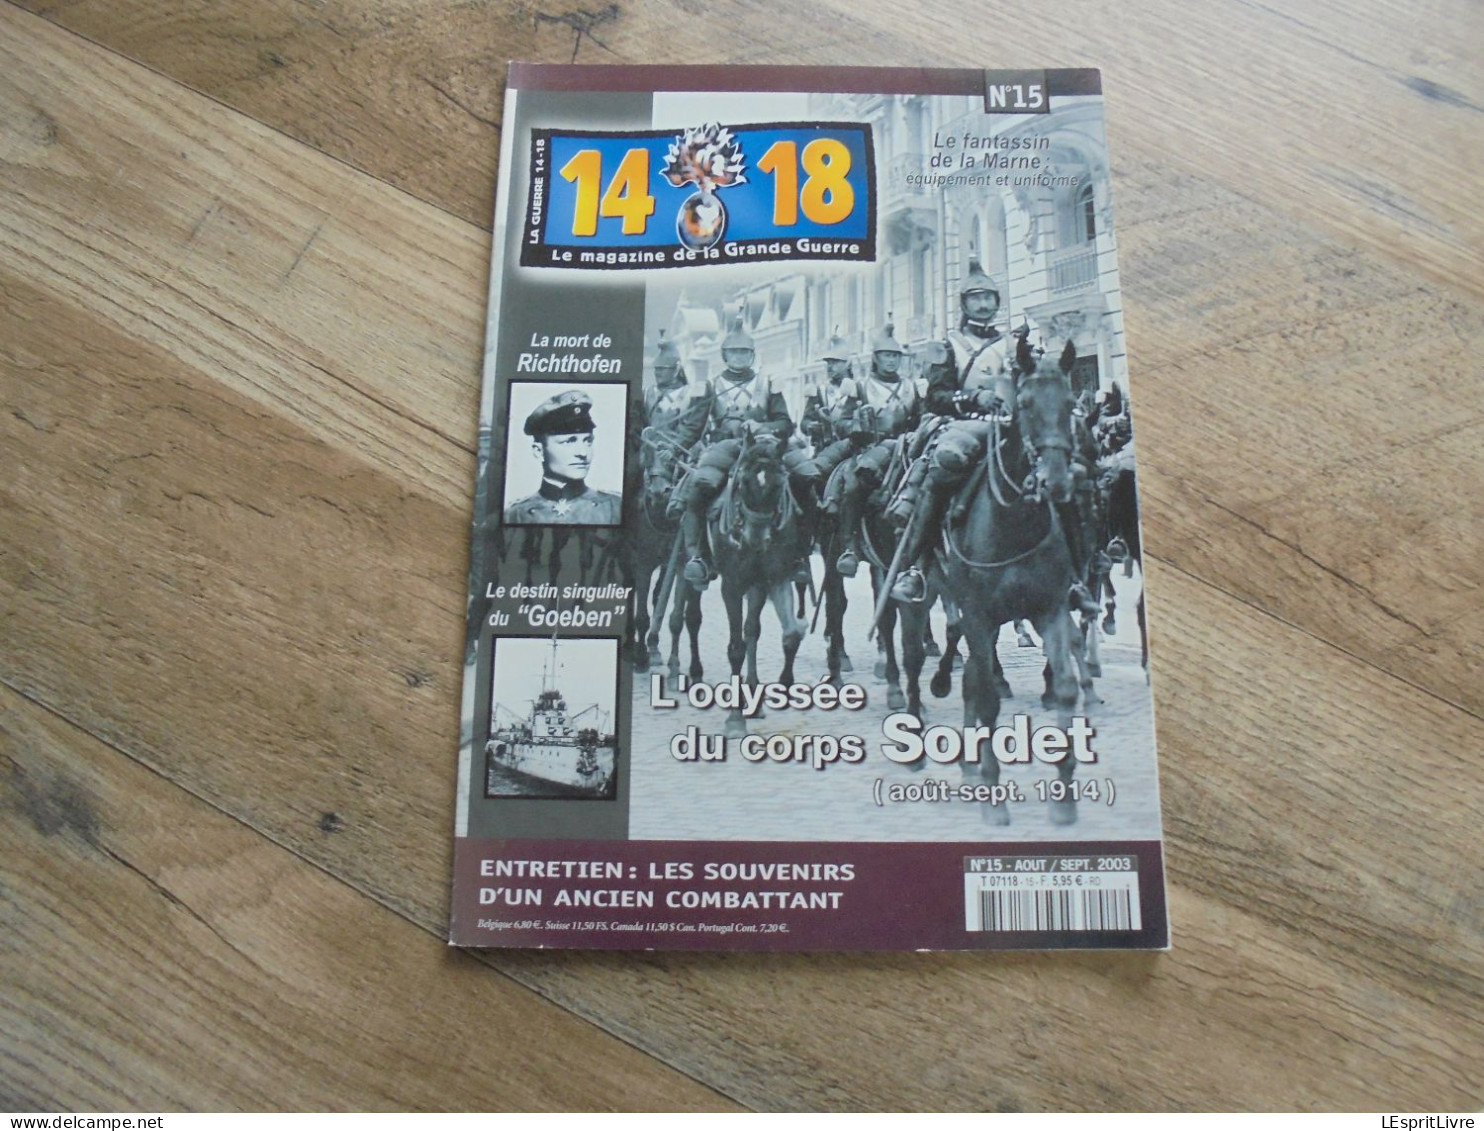 14 18 Le Magazine De La Grande Guerre N° 15 Cavalerie Sordet Baron Rouge Von Richtofen Fokker Goeben Artisanat Tranchée - Guerra 1914-18